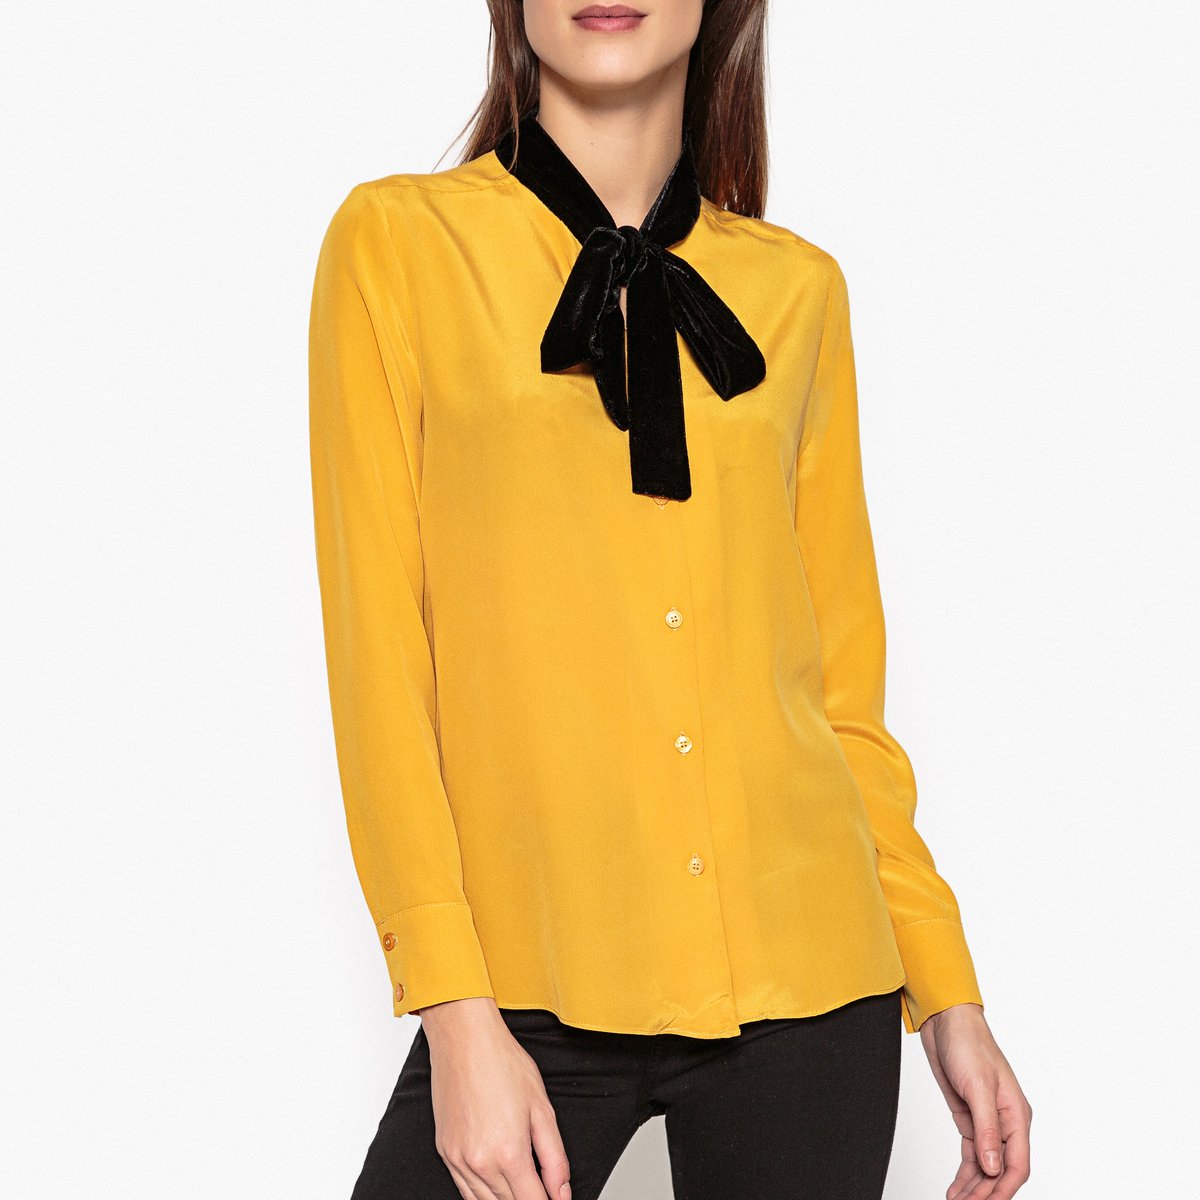 Рубашка Из шлка с галстуком-бантом NANO XS желтый